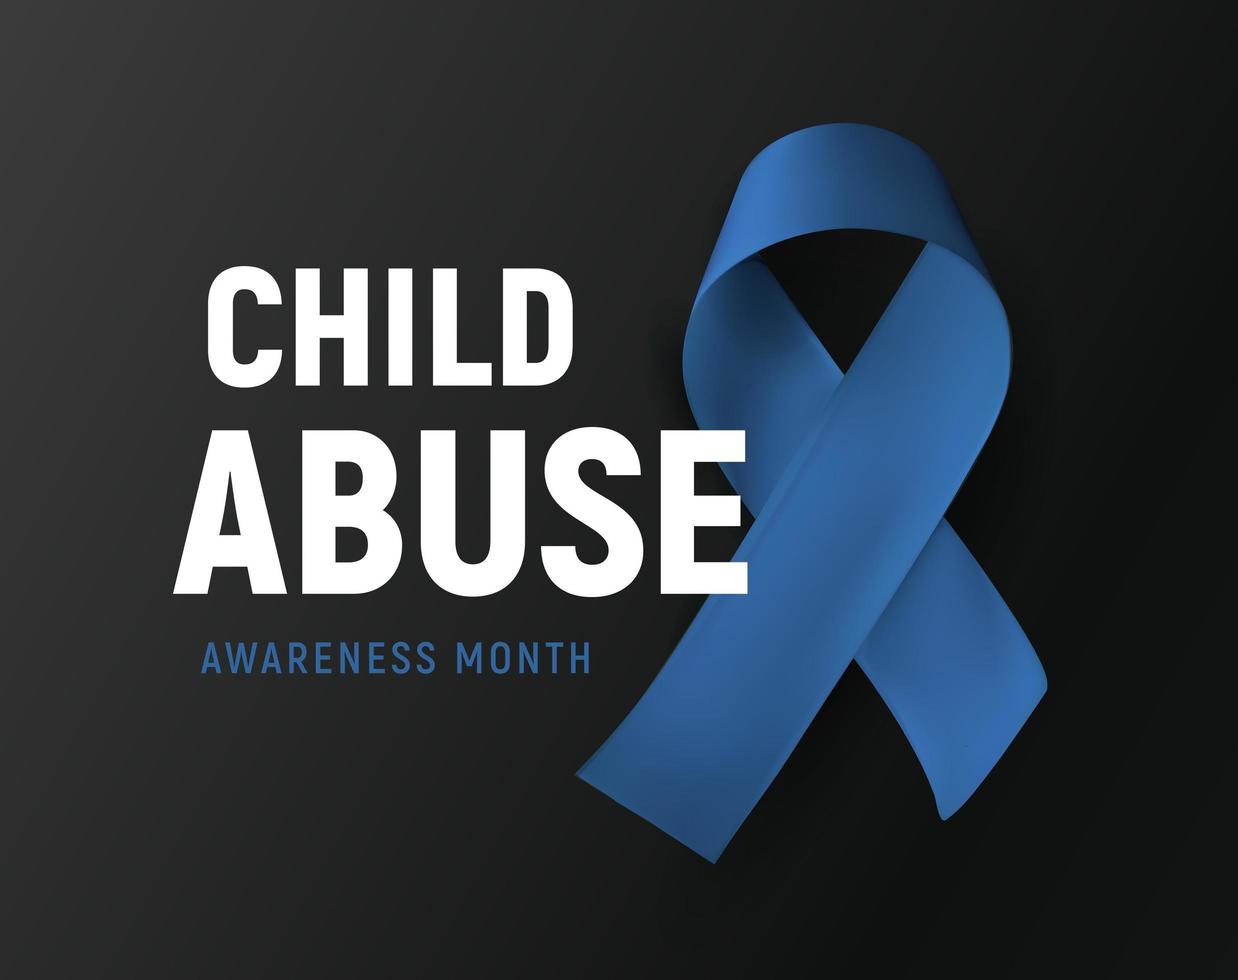 Monat des Bewusstseins für Kindesmissbrauch, Vektorlogo, Symbol für Gewaltprävention für Kinder, blaues Band auf schwarzem Hintergrund, Vektorillustration vektor